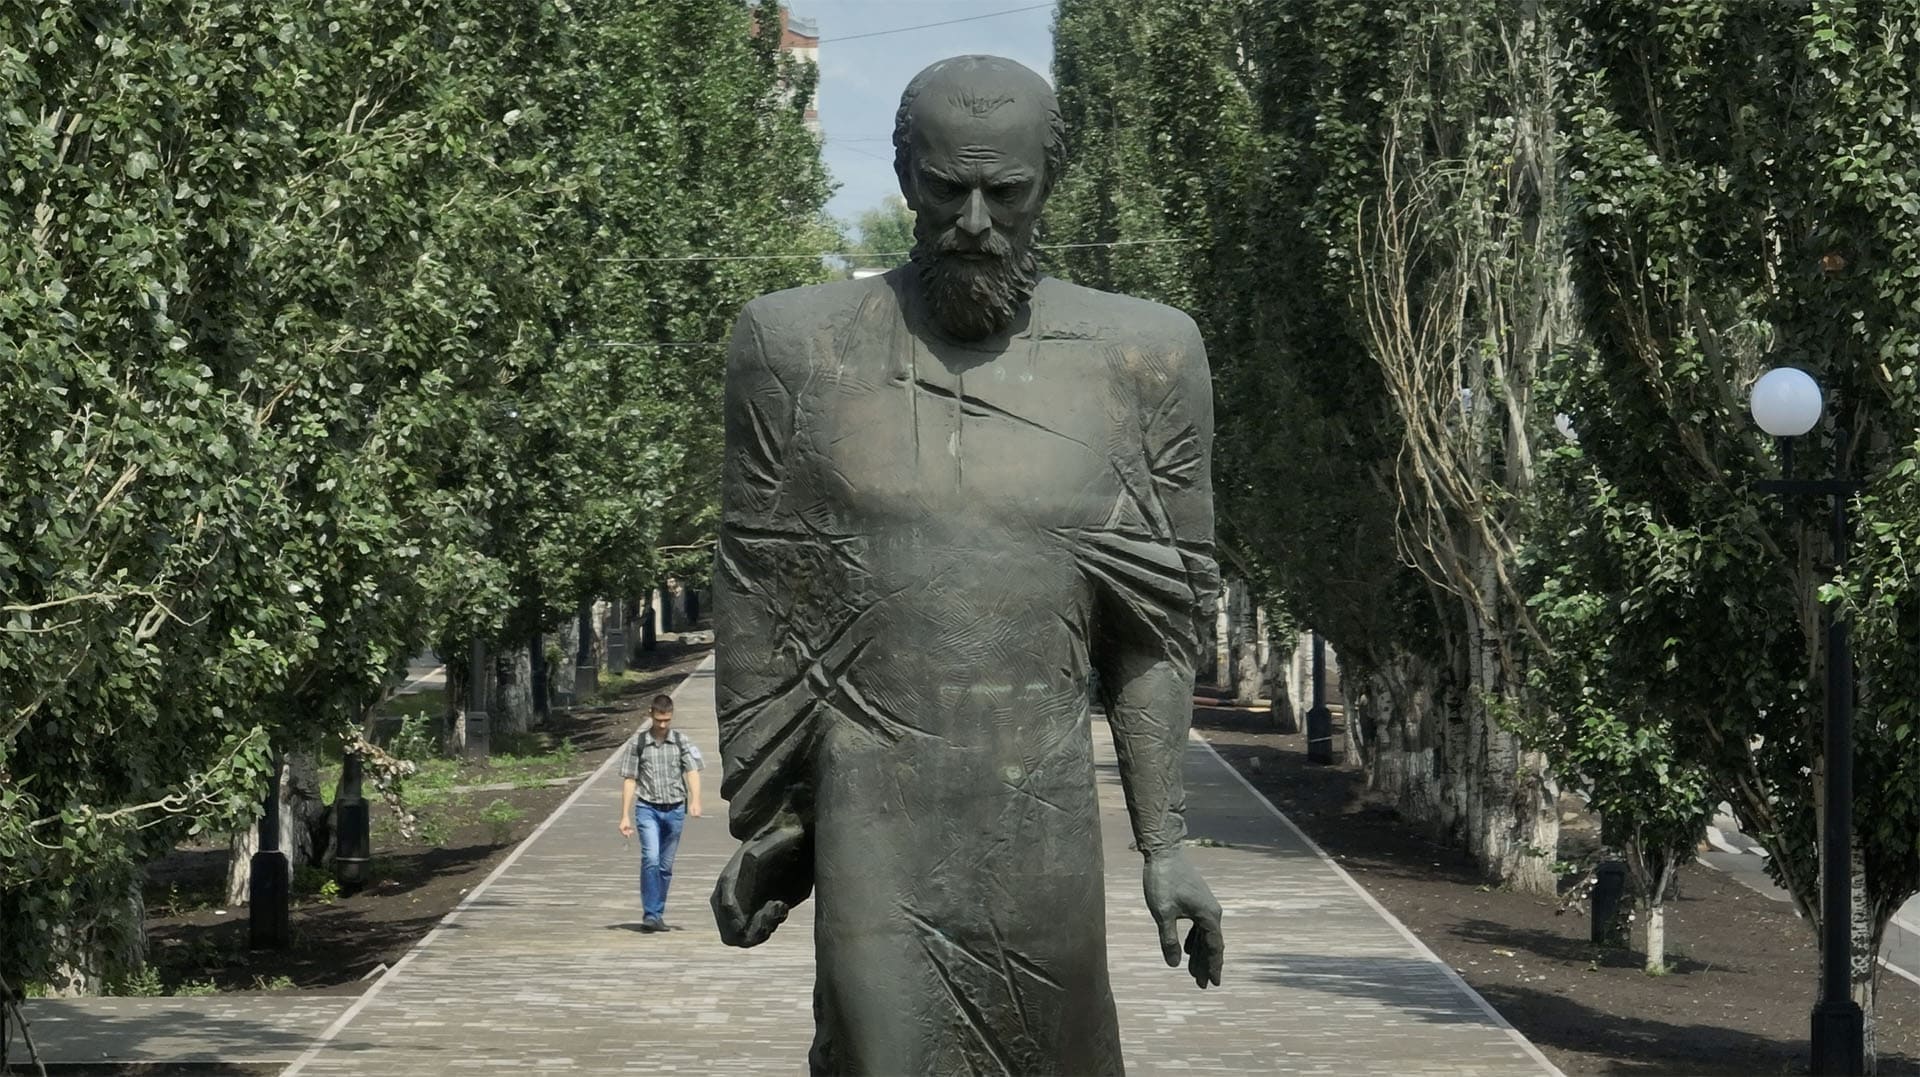 Памятник Достоевскому